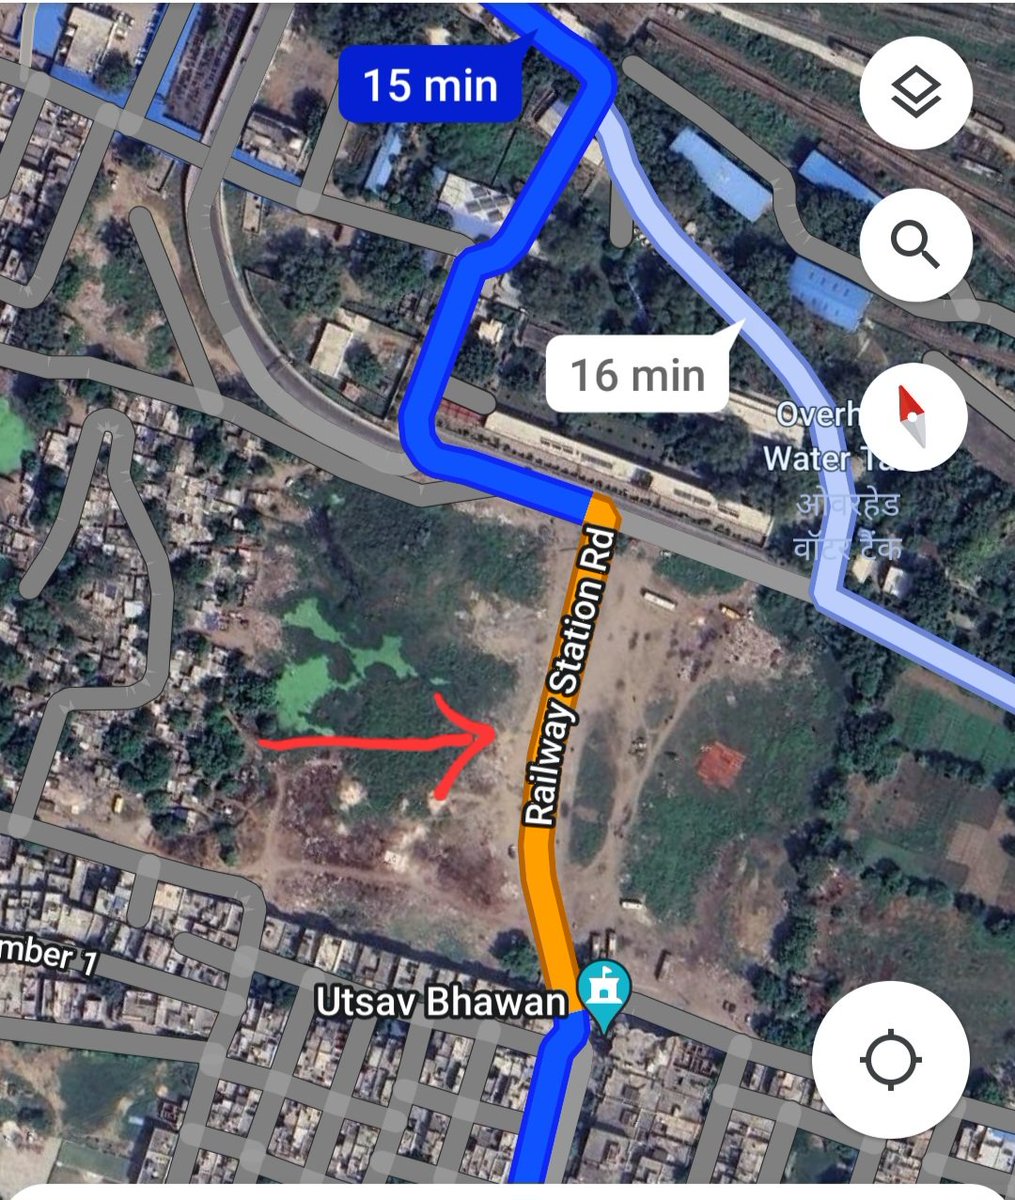 @dm_ghaziabad @RailMinIndia पता नहीं इस स्टेशन रोड को बनाने का जिम्मेदार कौन है? Ghaziabad authorities or railways? छोटा सा पैच पूरी तरह टूट चुका है और कभी भी गंभीर हादसा हो सकता है। @CMOfficeUP @uptrafficpolice @JagranNews #uthaoawaaz